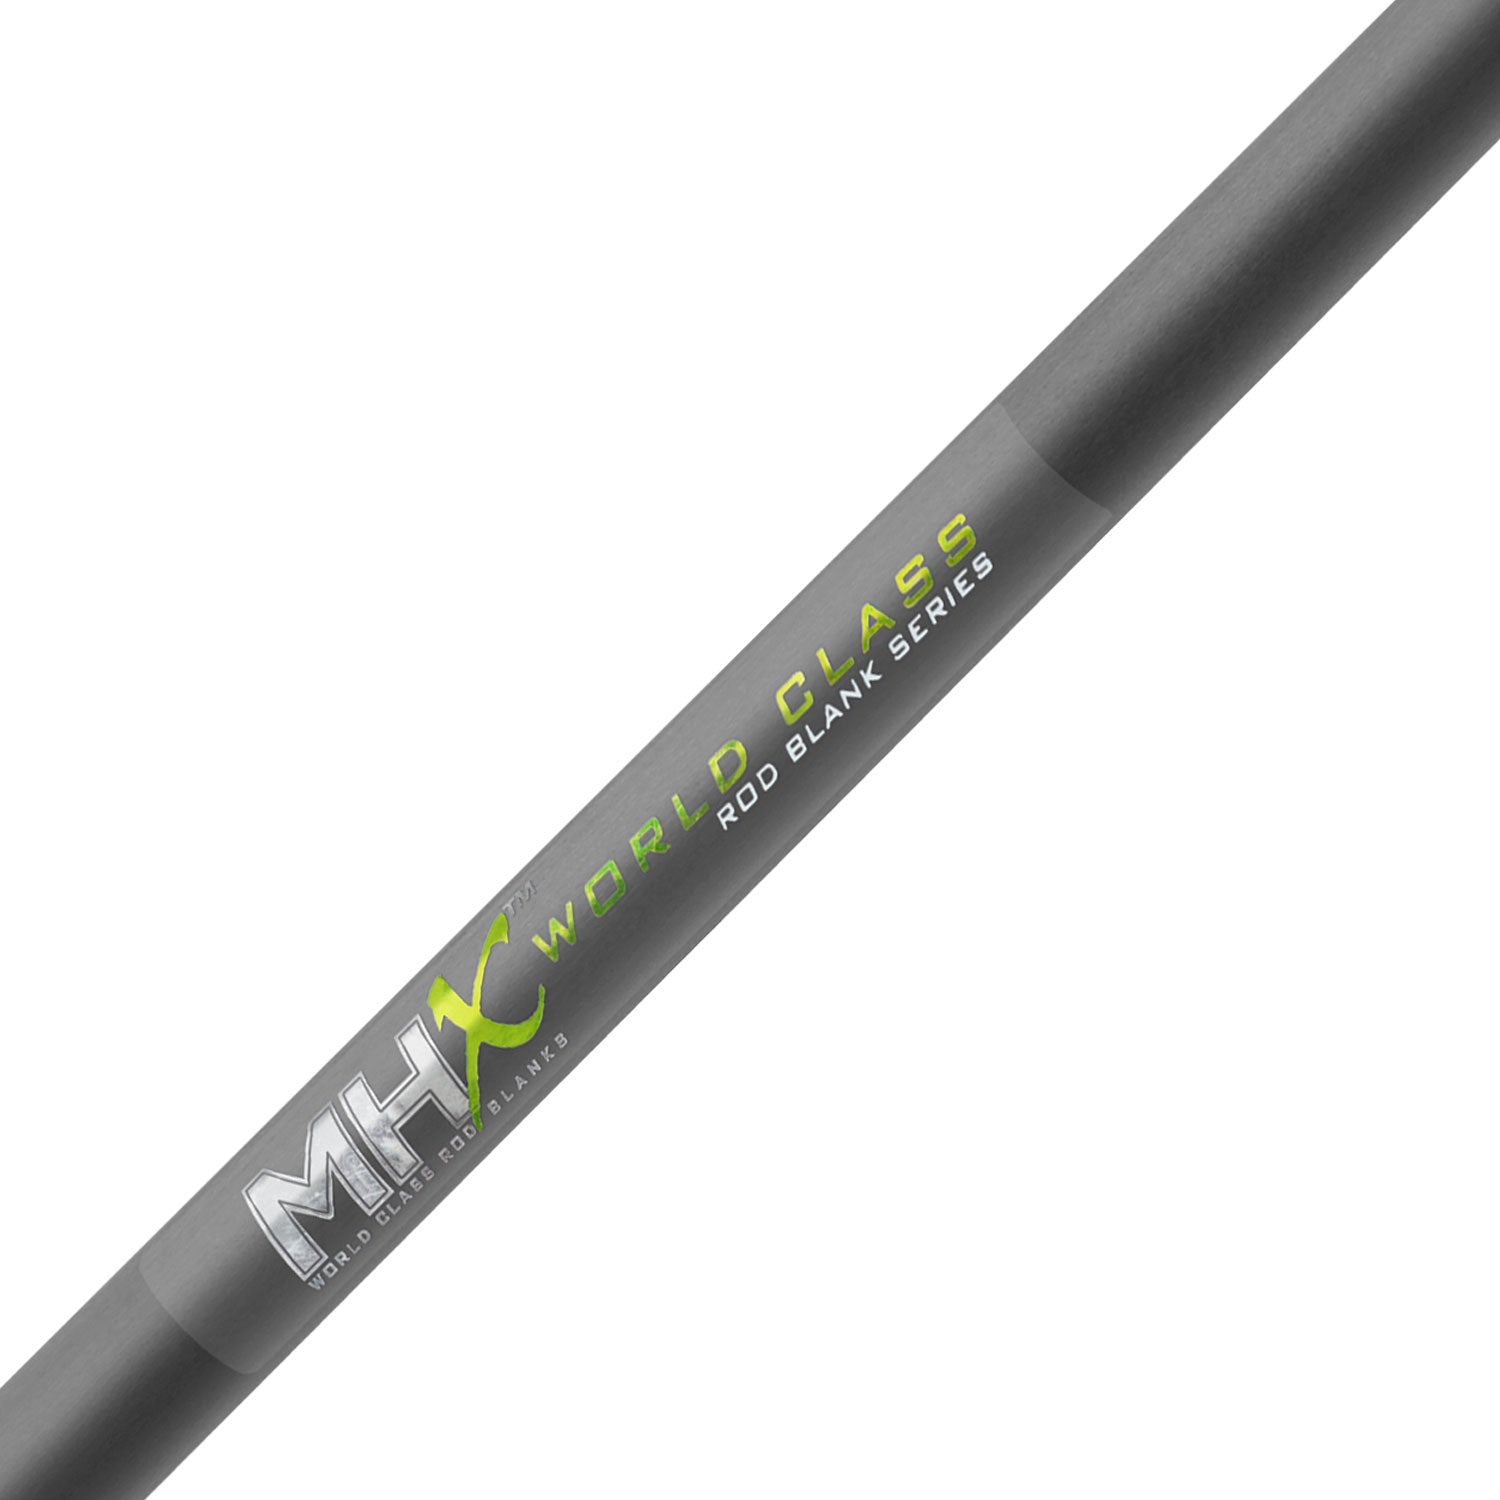 MHX 8'0" Med-Heavy Crankbait Rod Blank - CB965-Blend